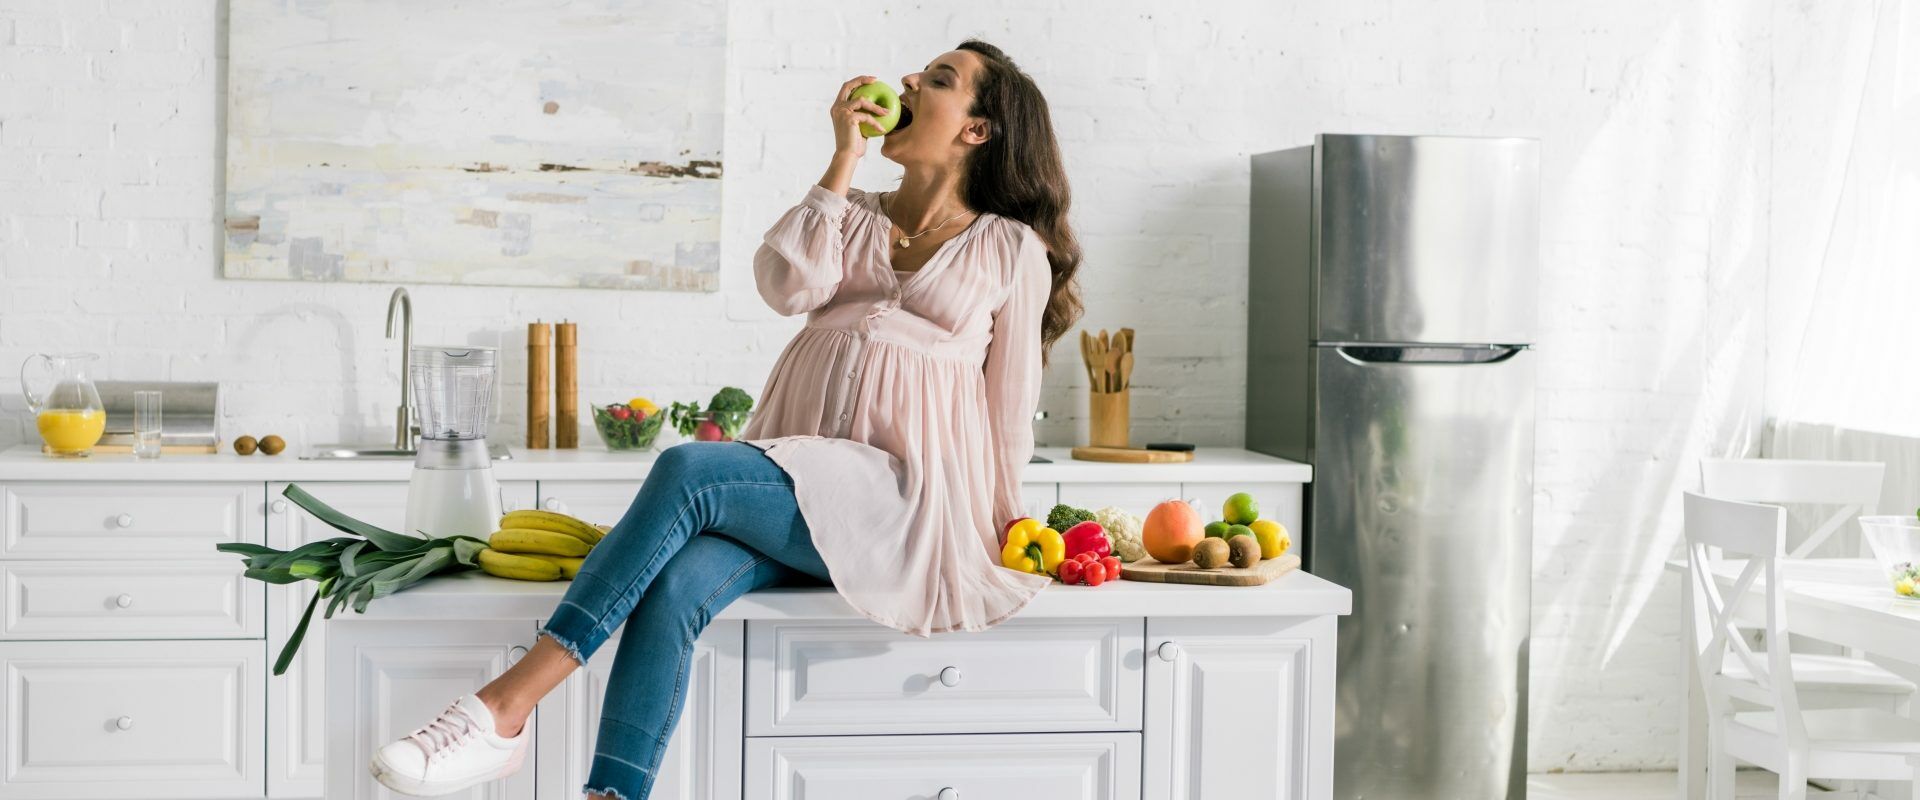 Zgaga w ciąży - jak sobie z nią poradzić? Kobieta w ciąży siedzi na blacie w kuchni je jabłko.